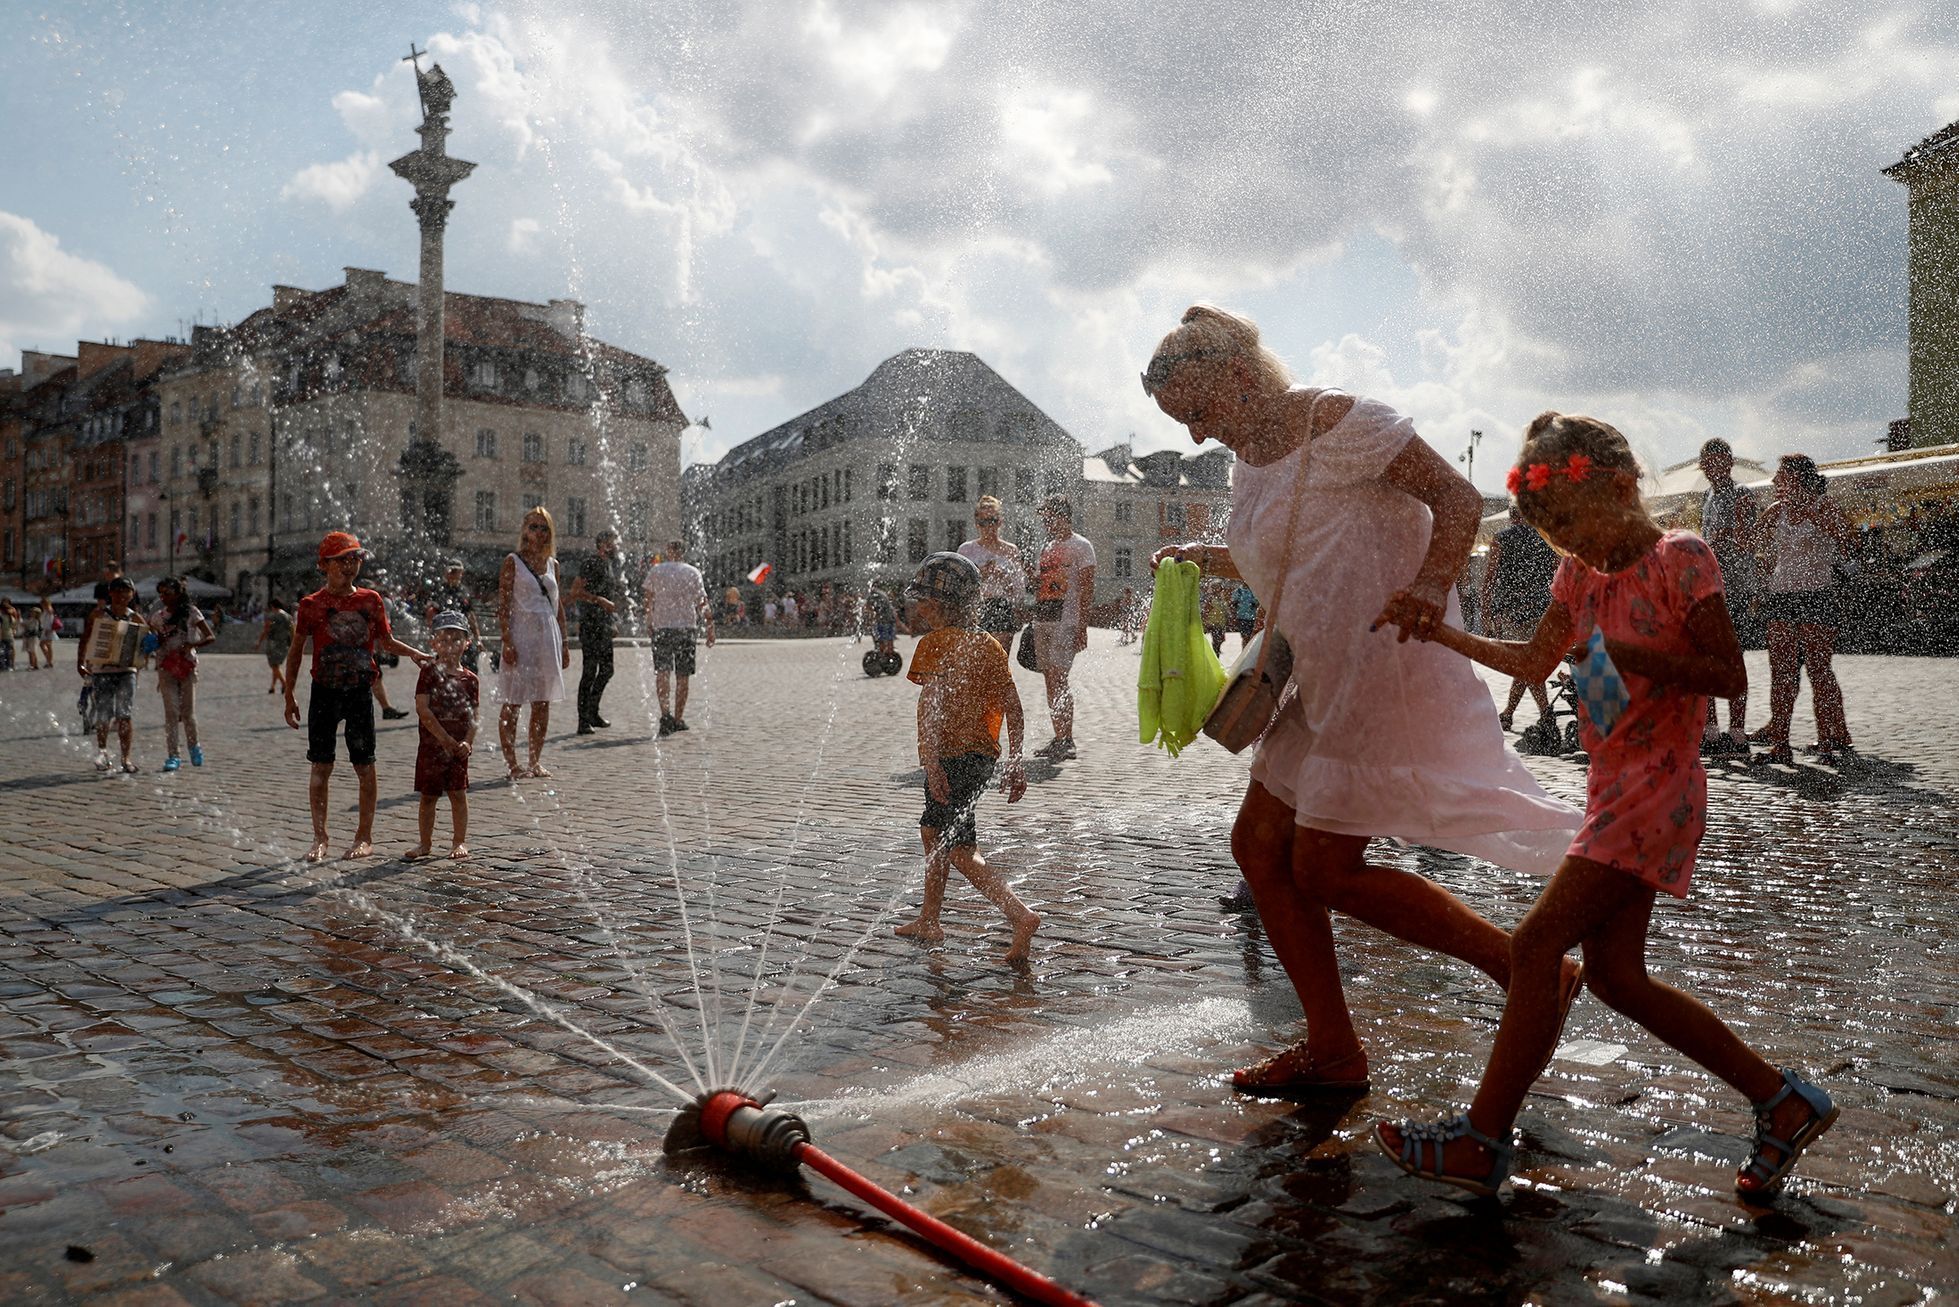 Fotogalerie / Letní vedra v Evropě / Zahraničí / Horko / Léto / Koupání / Voda / Počasí / Osvěžení / Reuters / 16